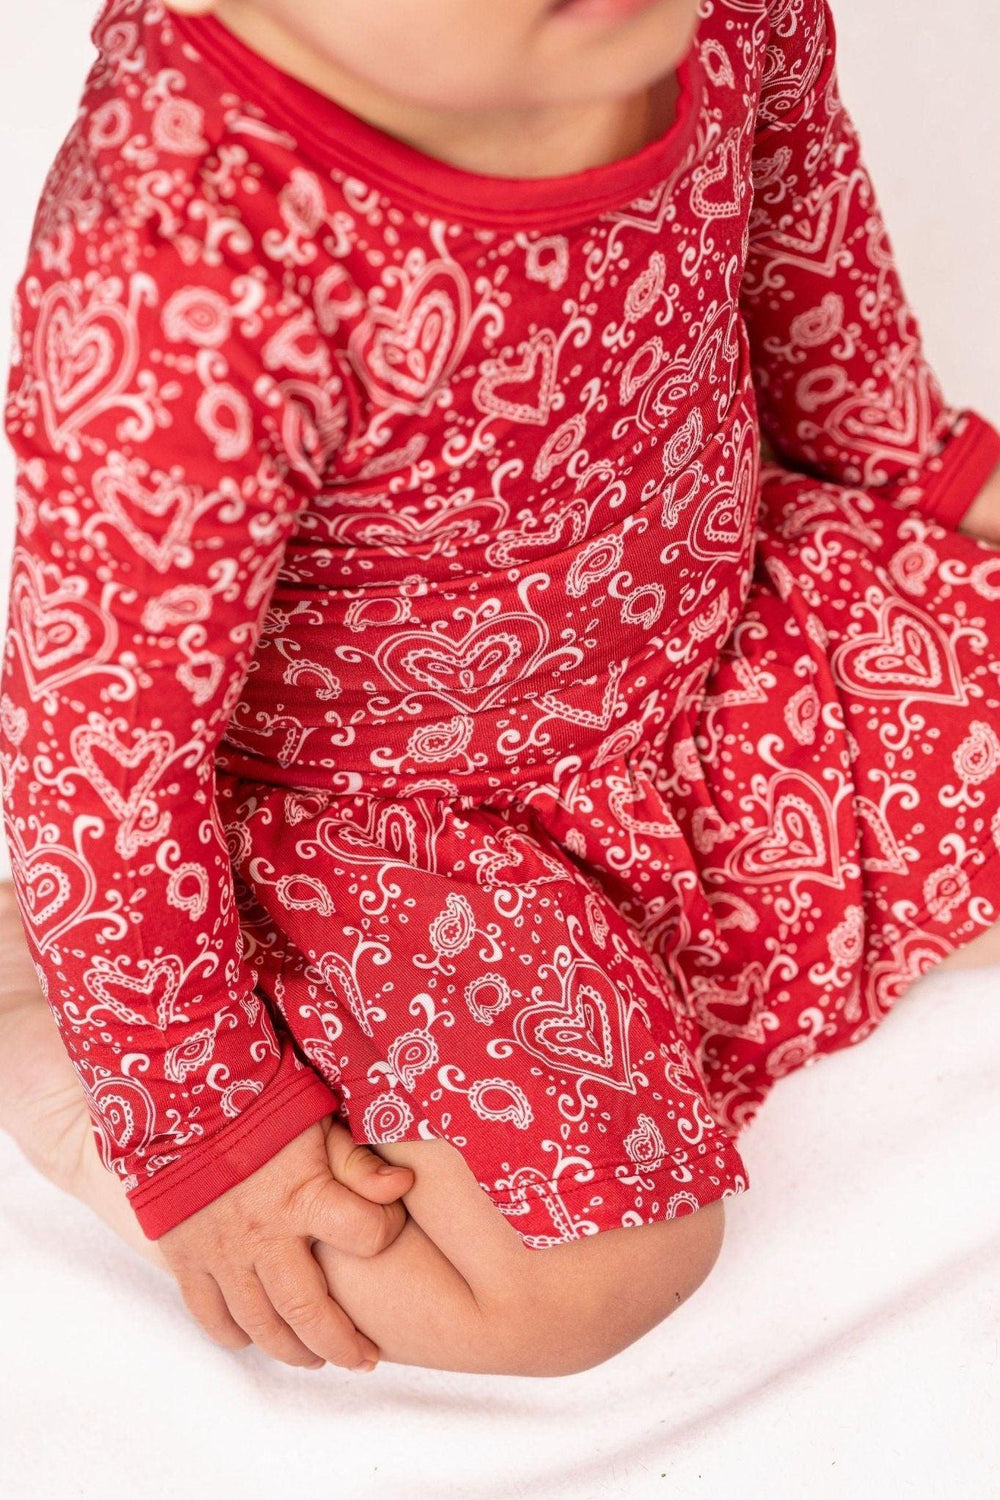 Red Paisley Heart Skirted Bamboo Bodysuit Romper for Valentine's Day - Sophia Rose Children's Boutique